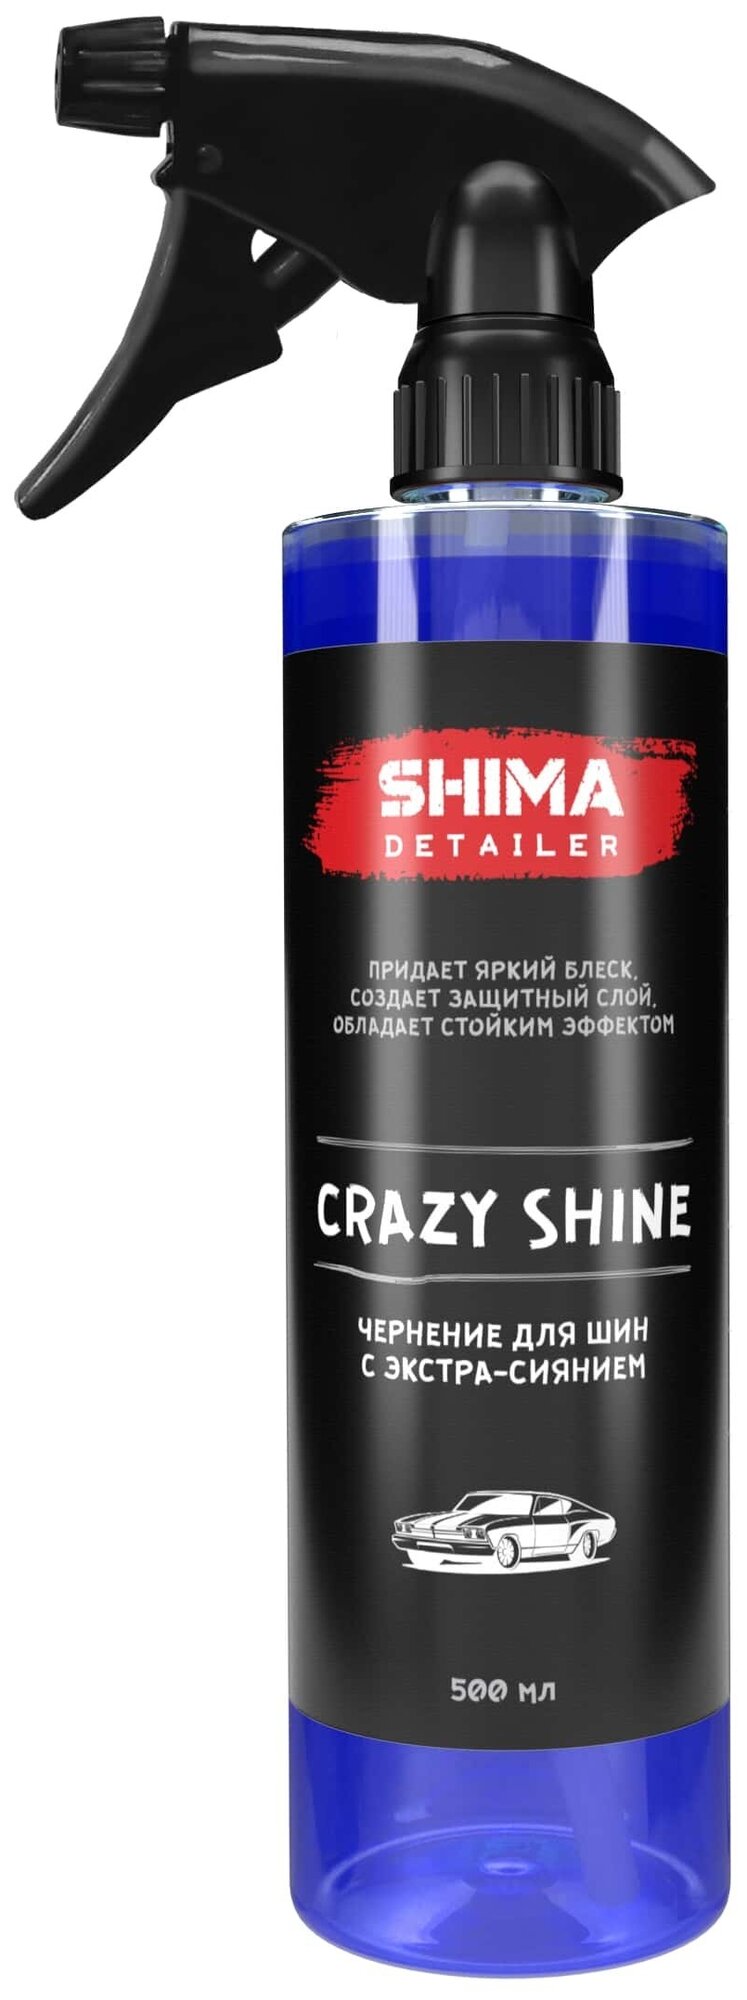 Чернитель для шин и резиновых изделий с экстра-сиянием SHIMA DETAILER CRAZY SHINE 500 мл 4603740920599